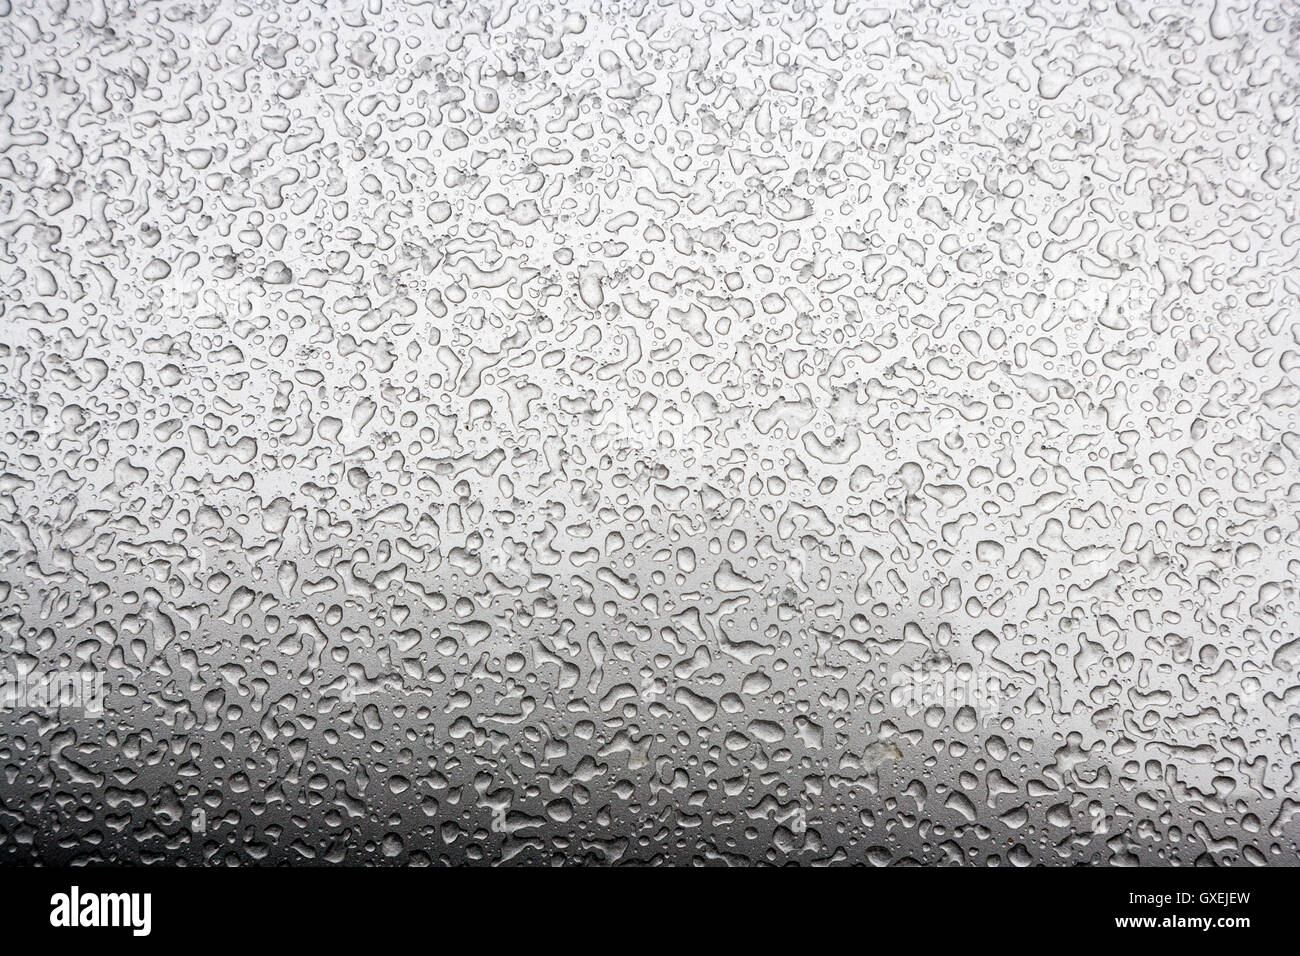 Perles de l'eau congelée après une tempête de neige fondue créer des motifs intéressants sur l'extérieur d'un fini métallique argent automobile. Banque D'Images